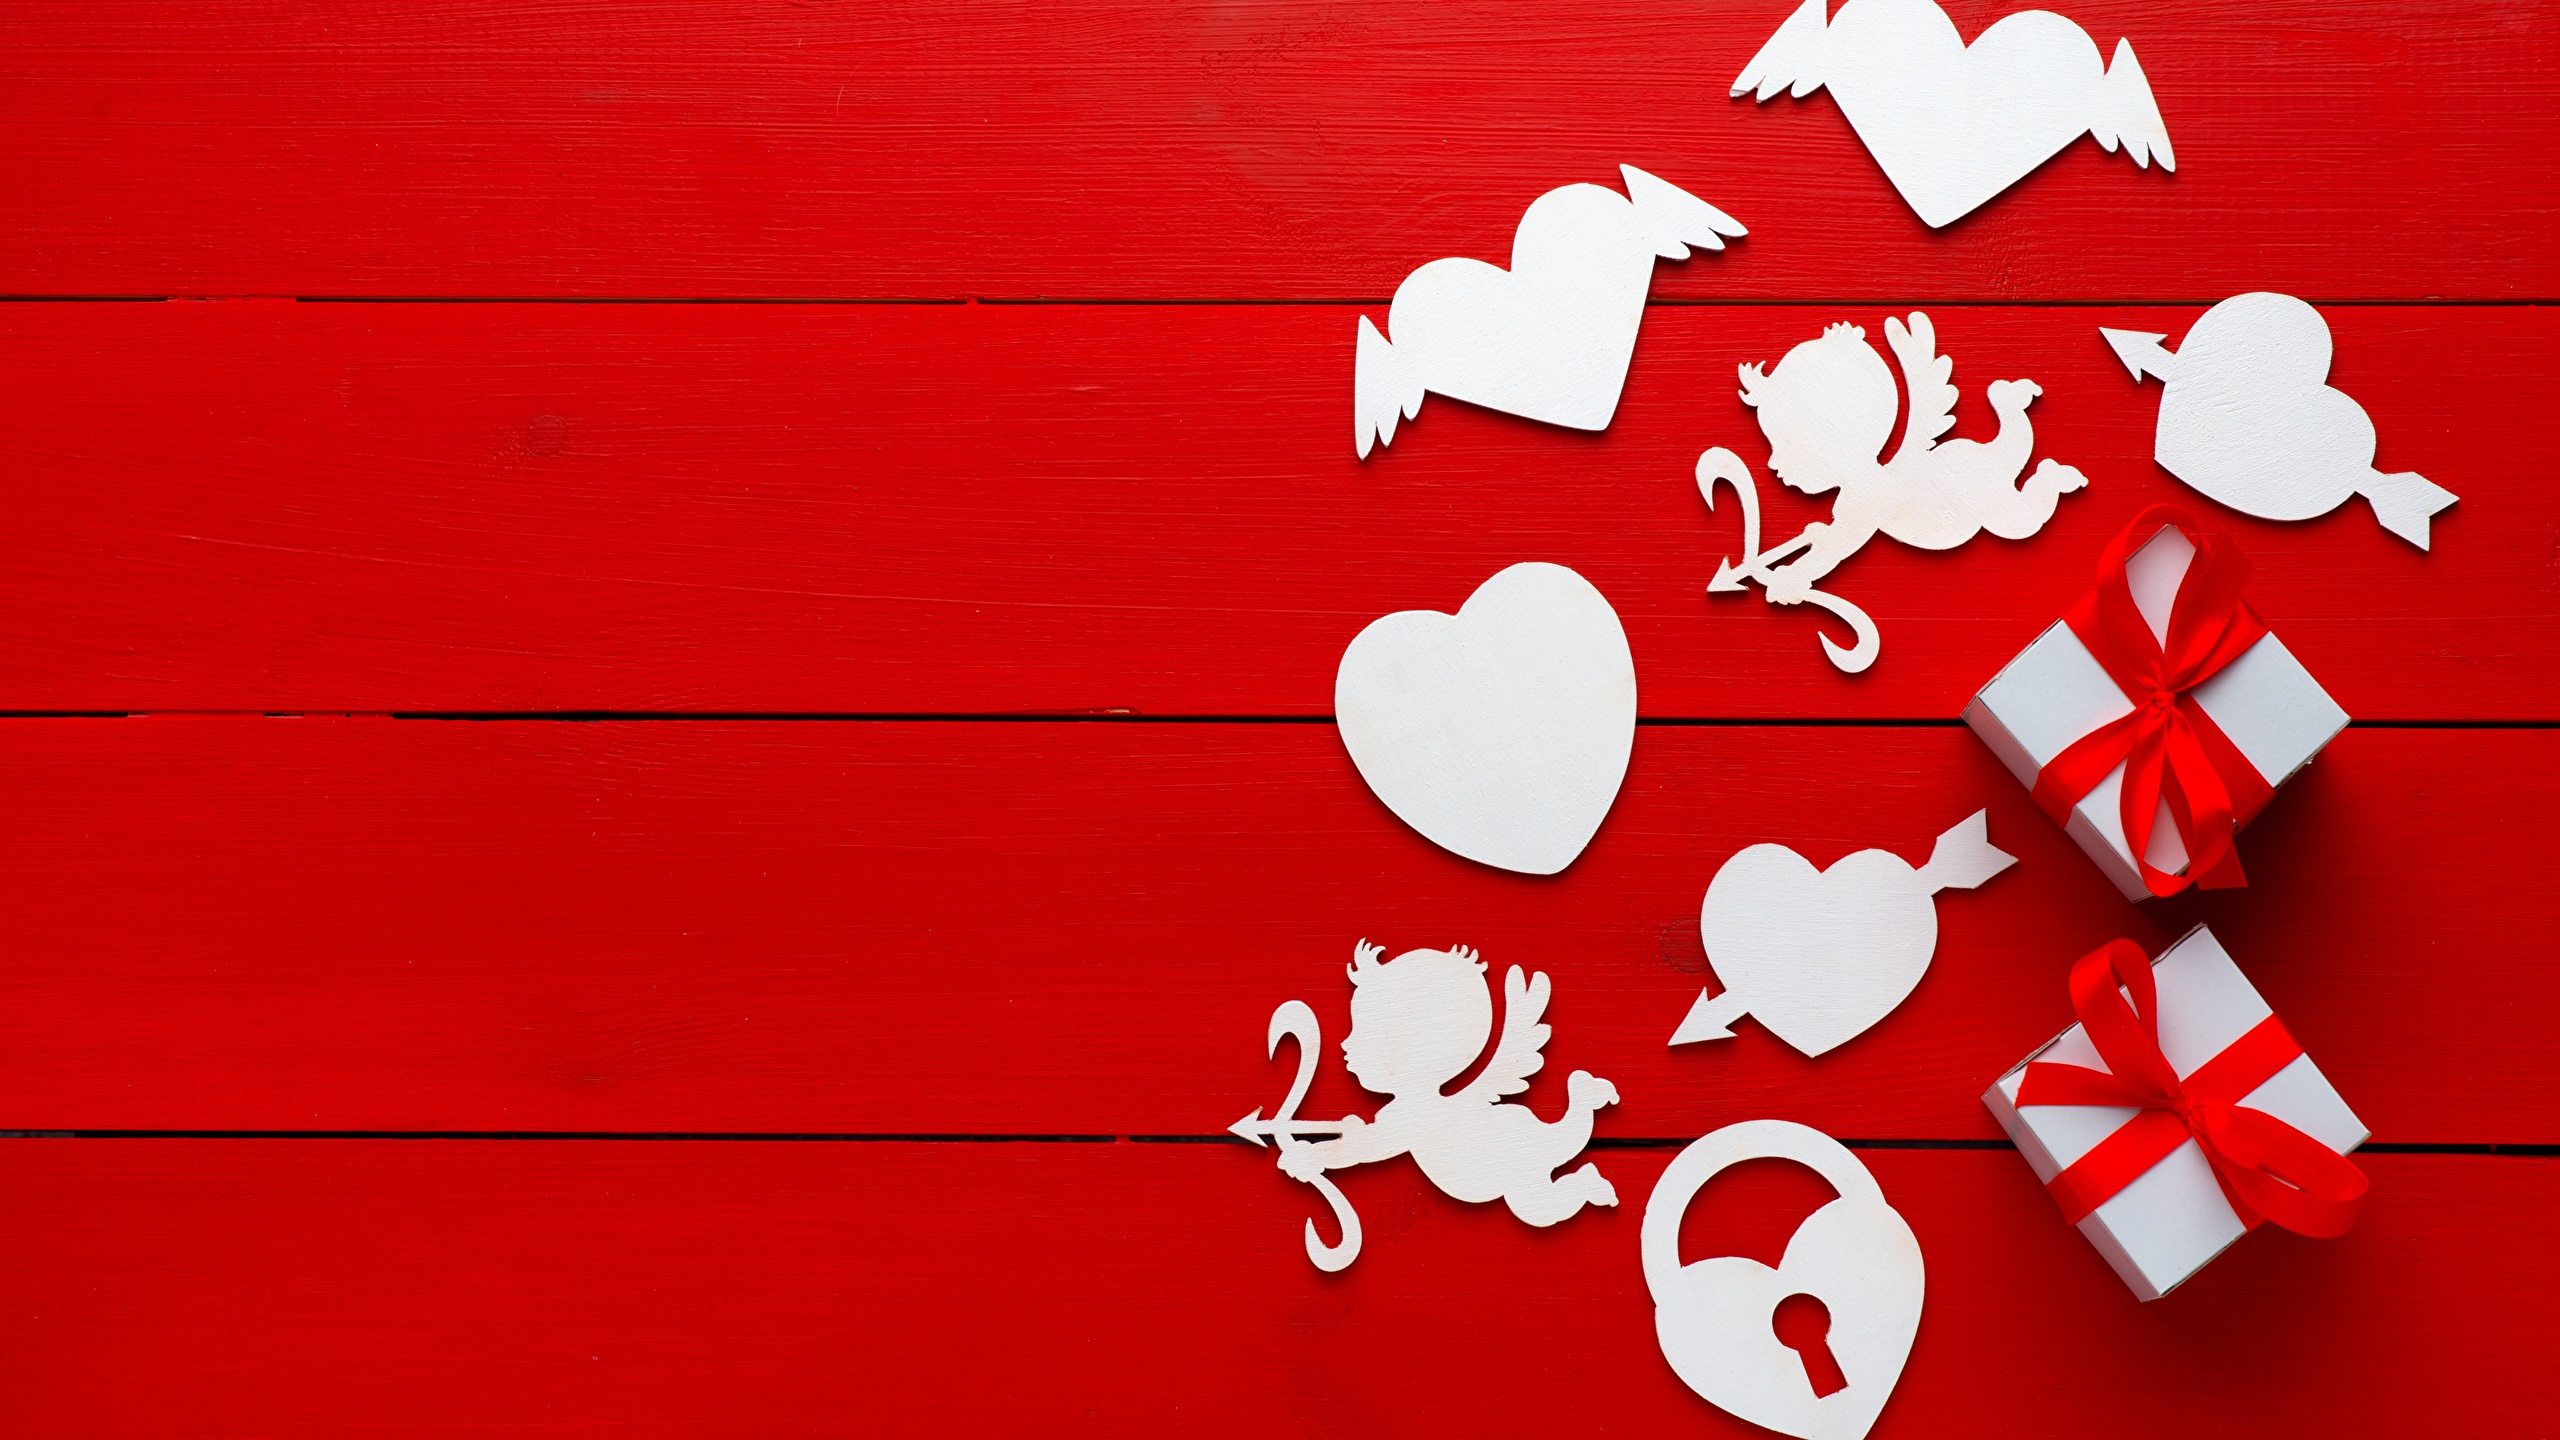 壁紙 2560x1440 バレンタインデー ハート 贈り物 赤の背景